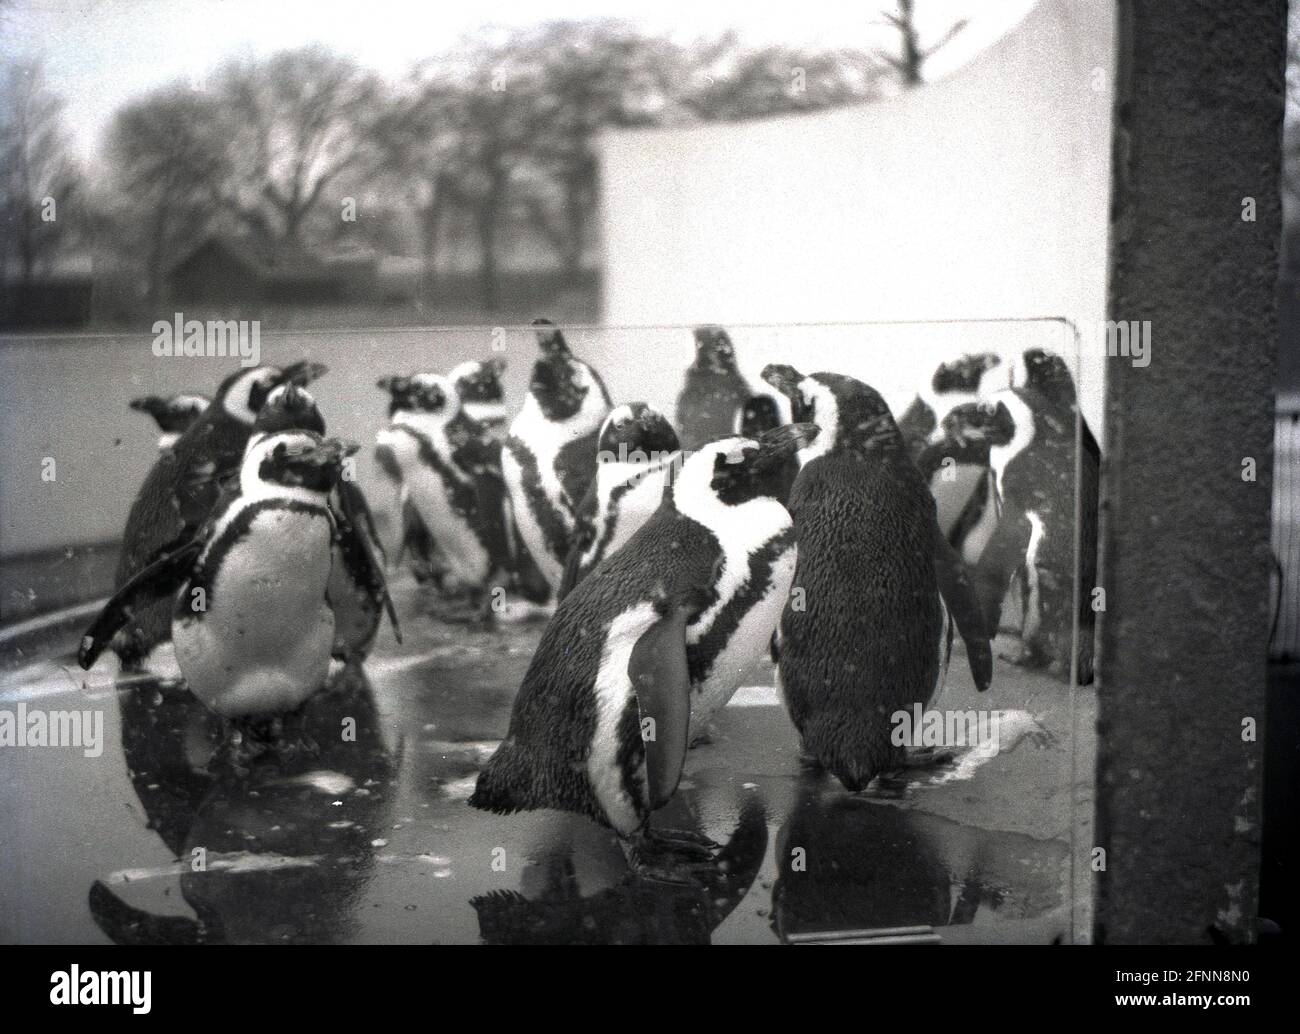 1955, historisch, eine kleine Gruppe von Pinguinen, die durch das Wasser planschen, London Zoo, aufgenommen durch perspektivische Leinwand. Soziale Vögel, sie fütterten, brüten und brüten in Gruppen. Der Zoo wurde 1847 für die Öffentlichkeit zur Unterstützung der Finanzierung geöffnet und wurde ursprünglich 1828 als reiner Ort für wissenschaftliche Studien der Zoological Society of London (ZSL) eröffnet, einer Wohltätigkeitsorganisation, die sich für den Schutz von Tieren und ihren Lebensräumen einsetzt. Stockfoto